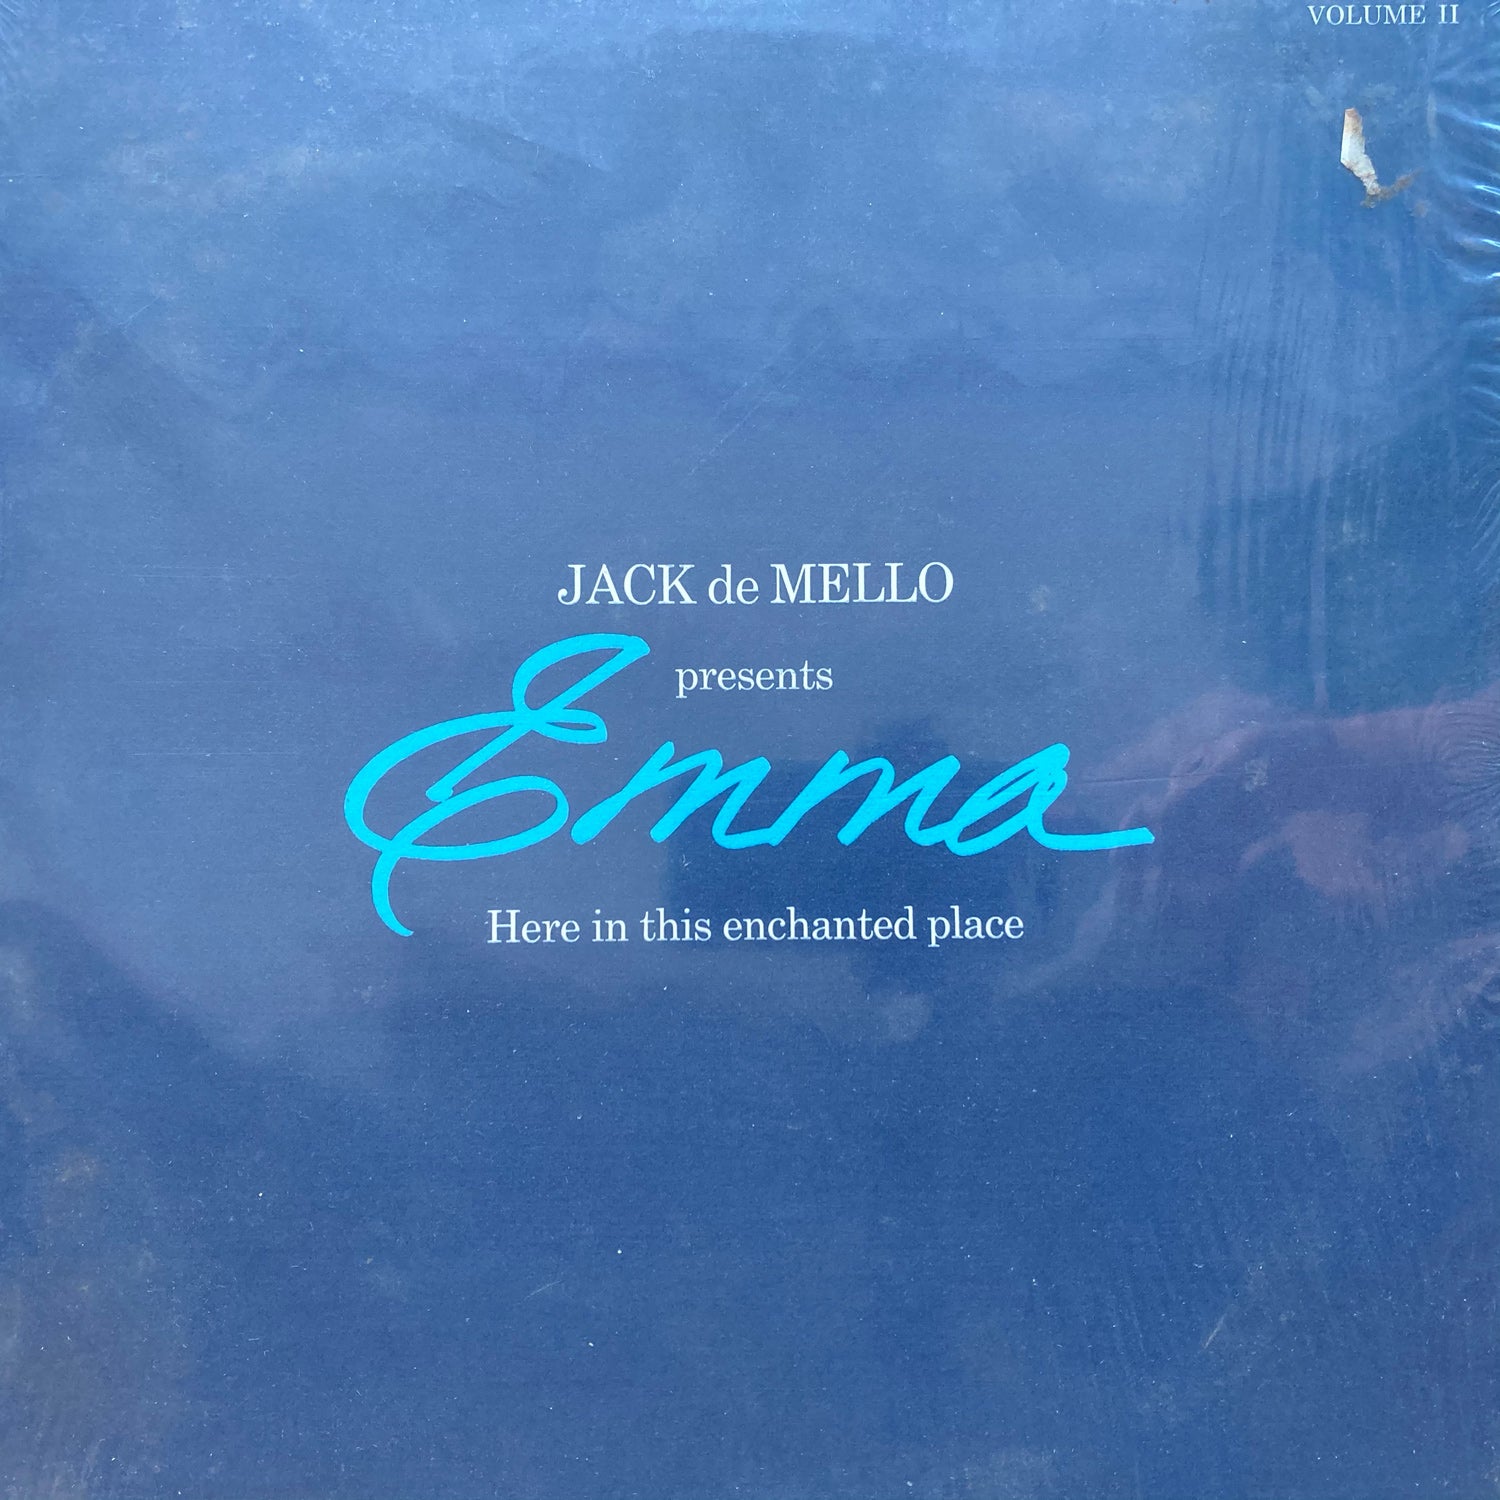 Emma Veary - Jack de Mello presents Vol 2